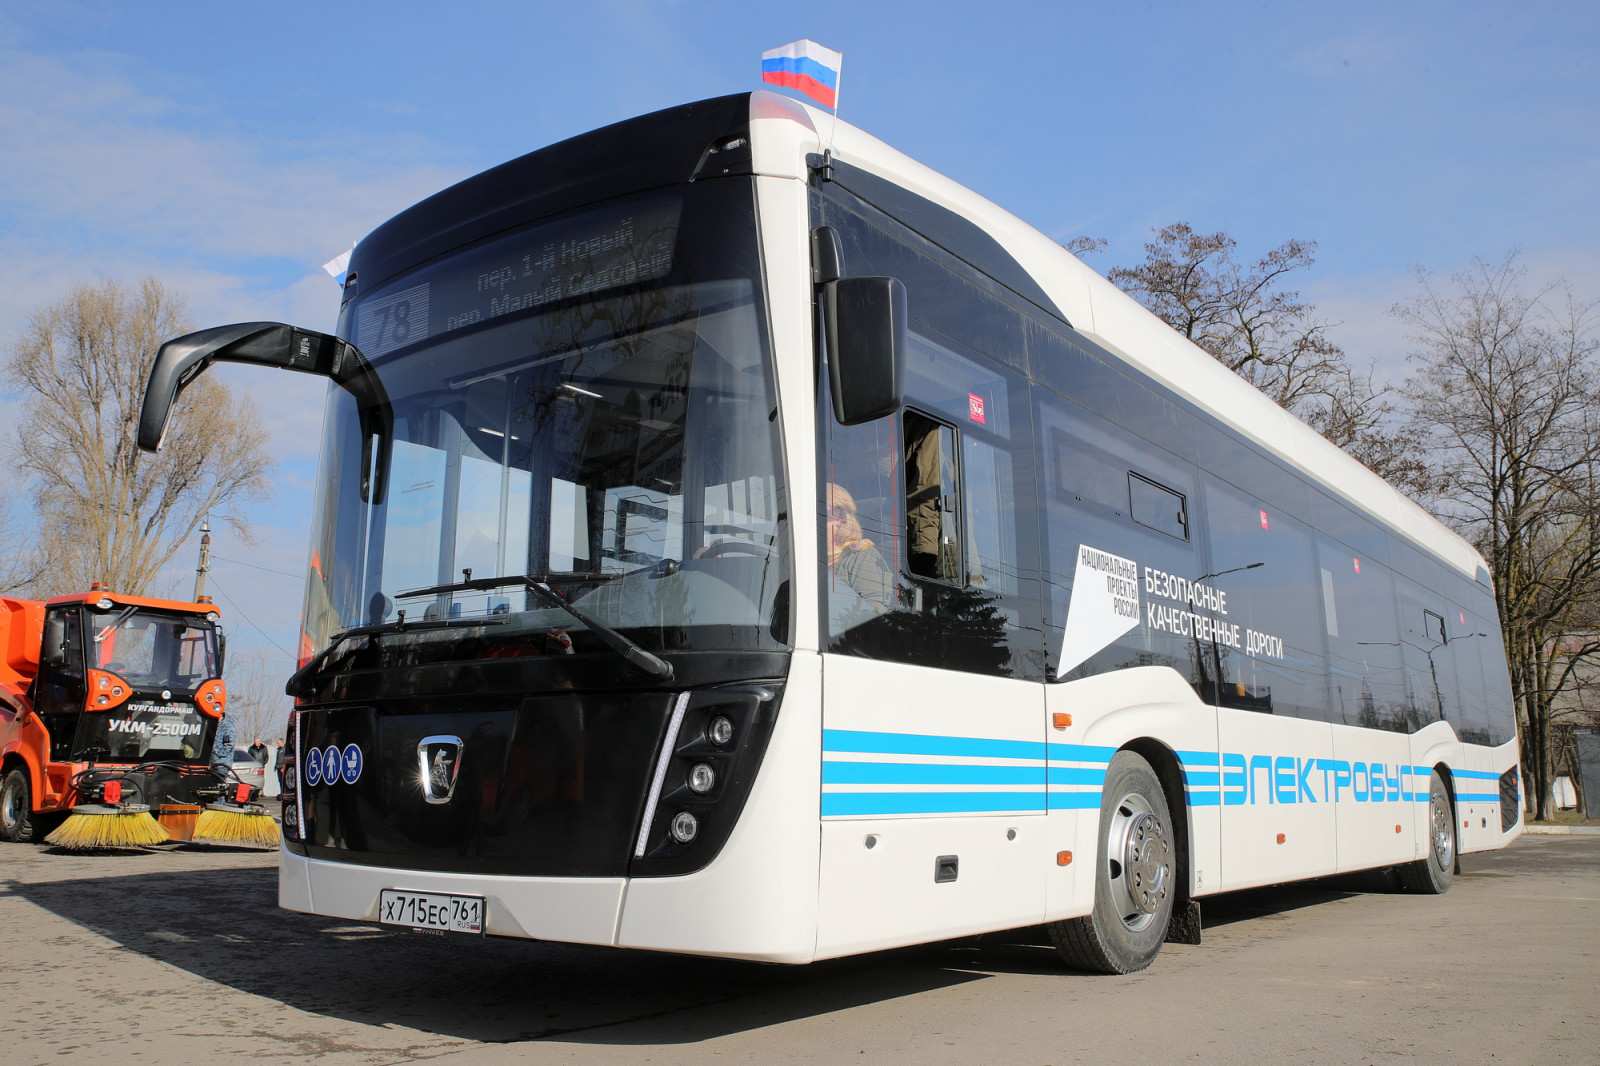 Из Левенцовки в центр Ростова-на-Дону 15 февраля запустили электробусный маршрут - фото 1